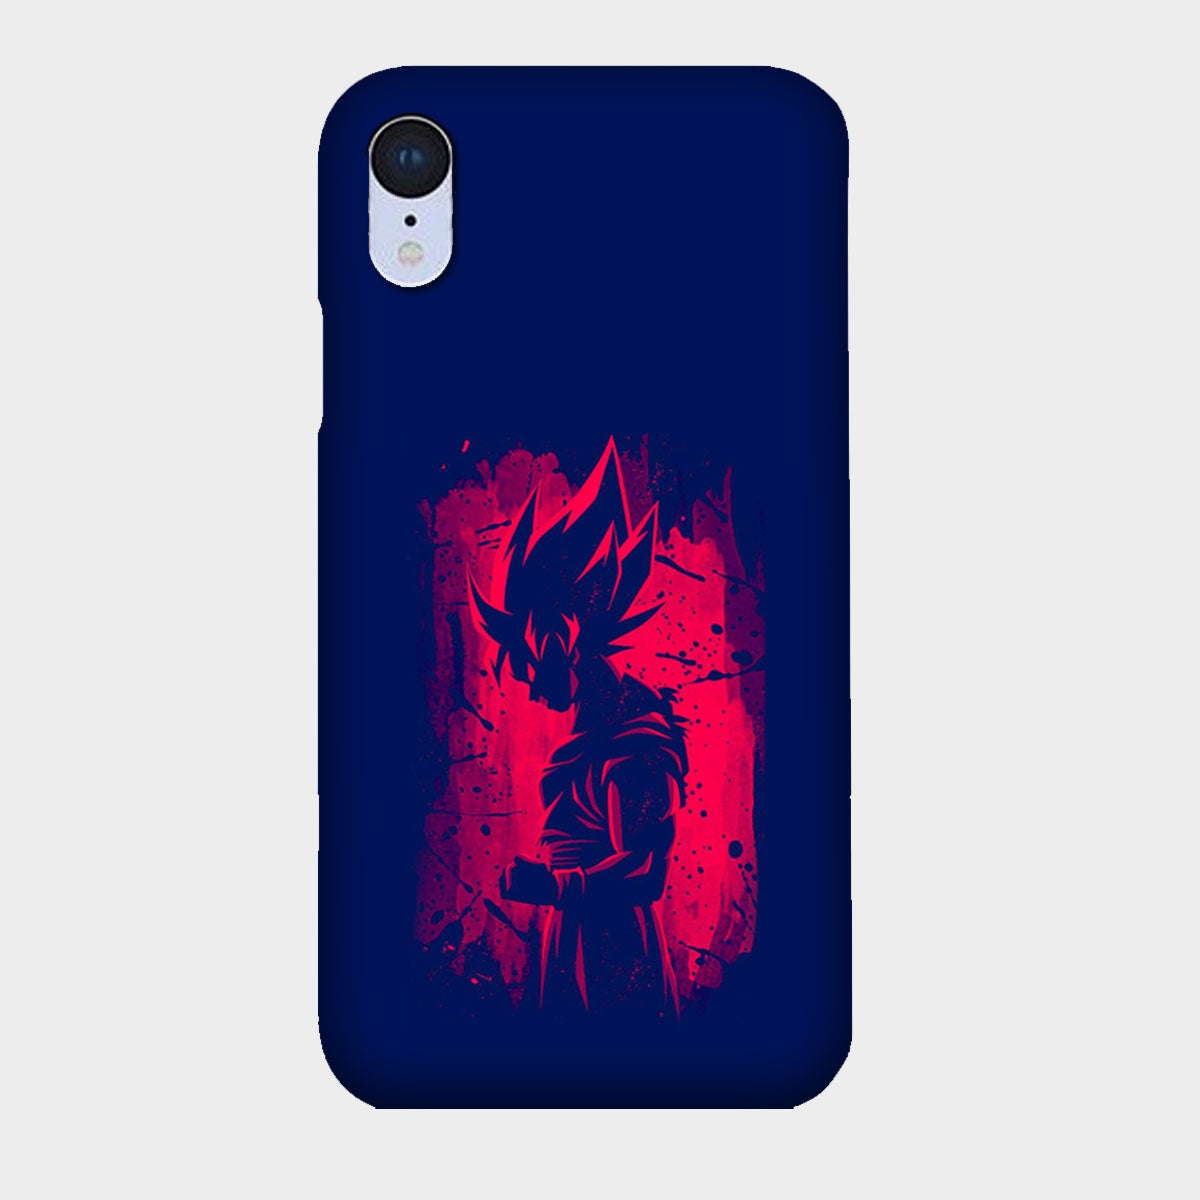 Dragon Ball Z Goku - Mobile Phone Cover - Hard Case